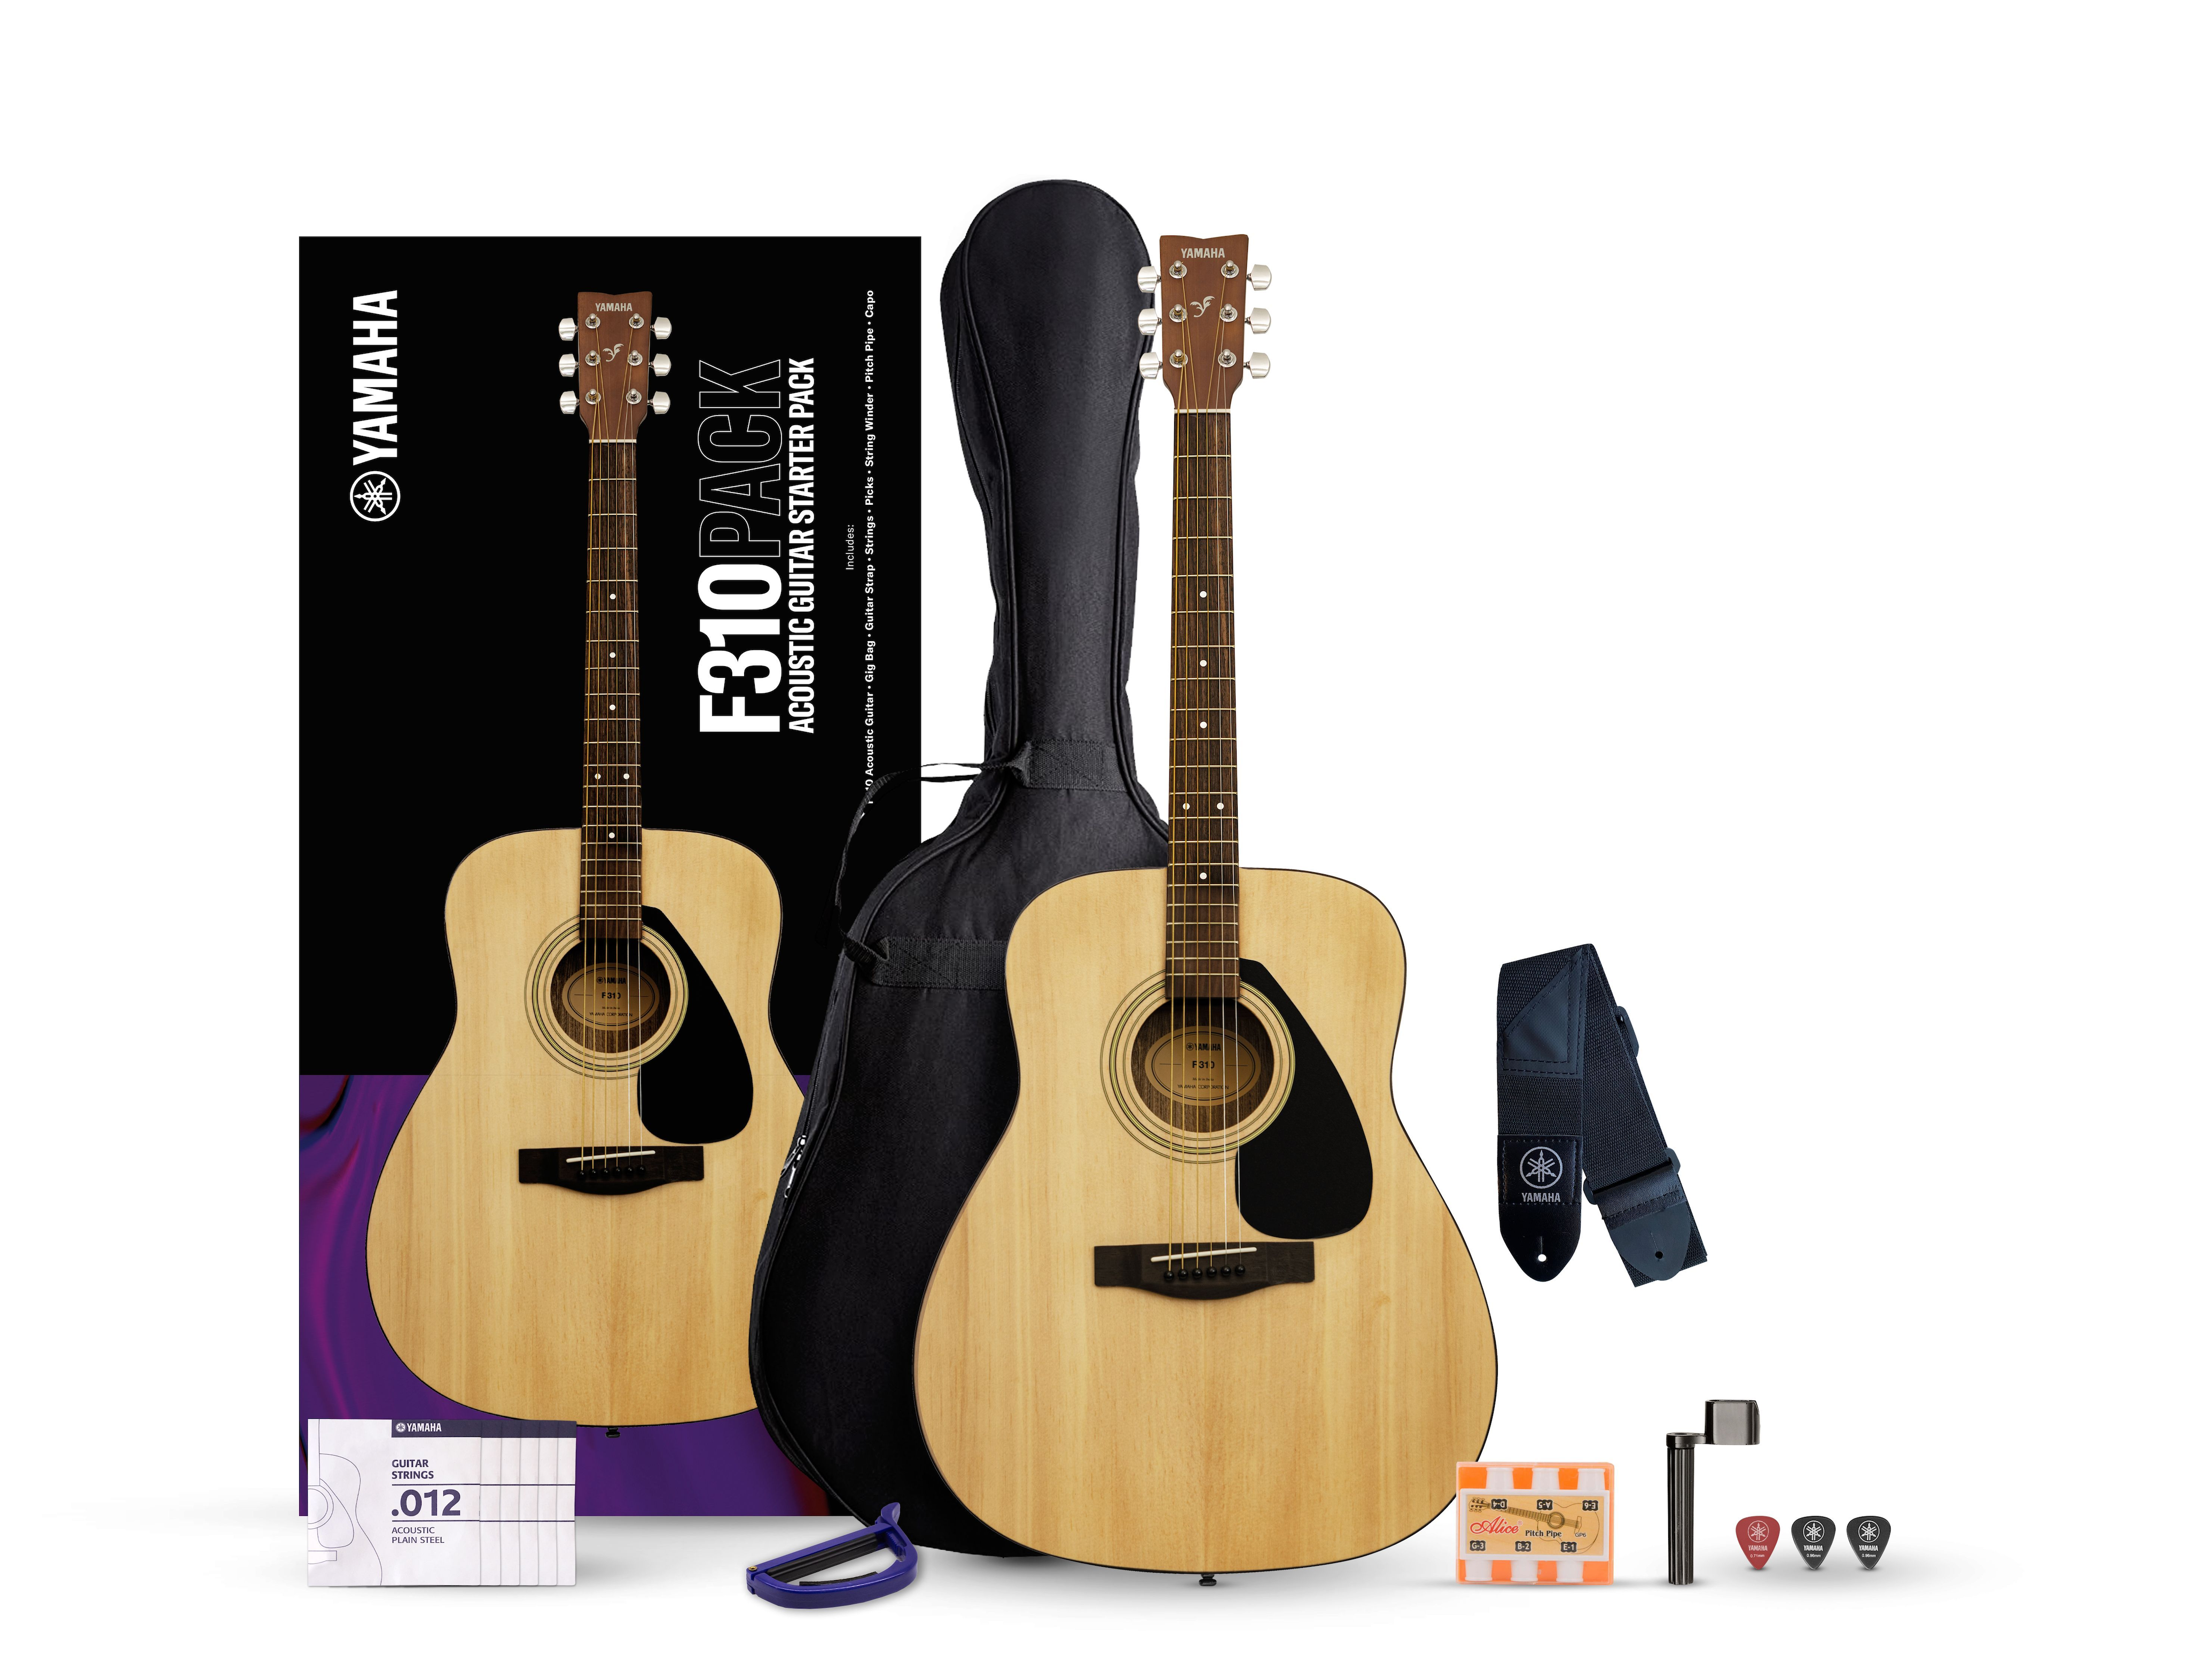 F / FX - Descripción - acústicas - Guitarras, Bajos y Amplificadores - Instrumentos musicales - Productos - Yamaha - España